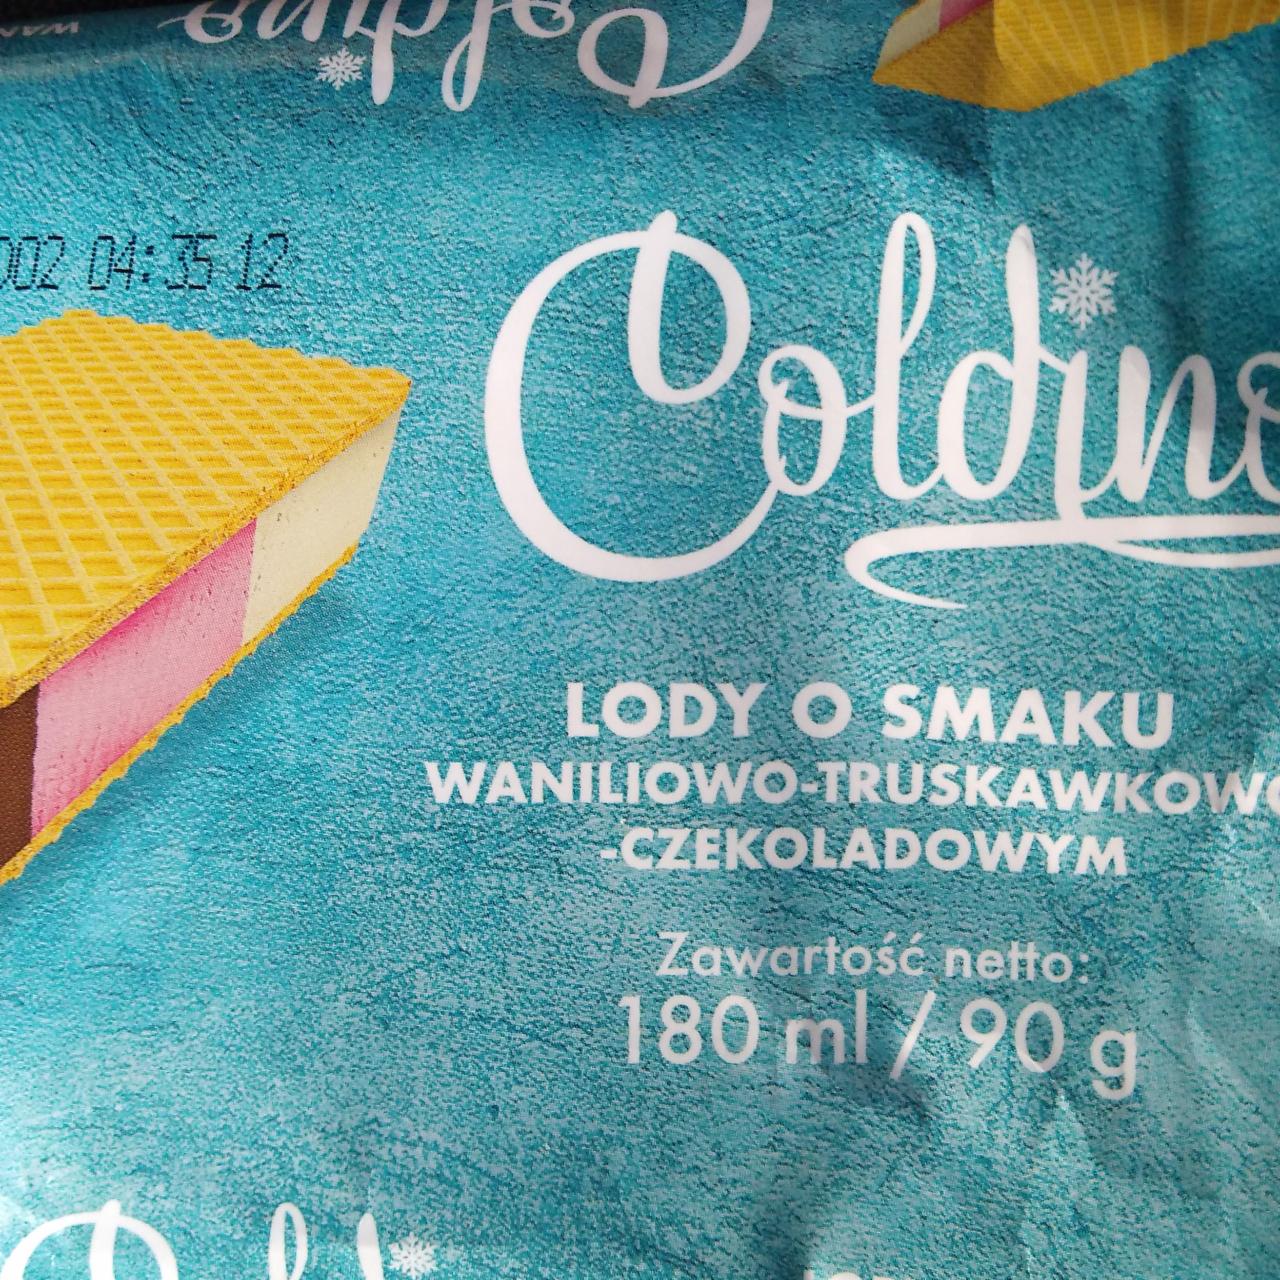 Zdjęcia - Lody o smaku waniliowo-truskawkowo-czekoladowym Coldino